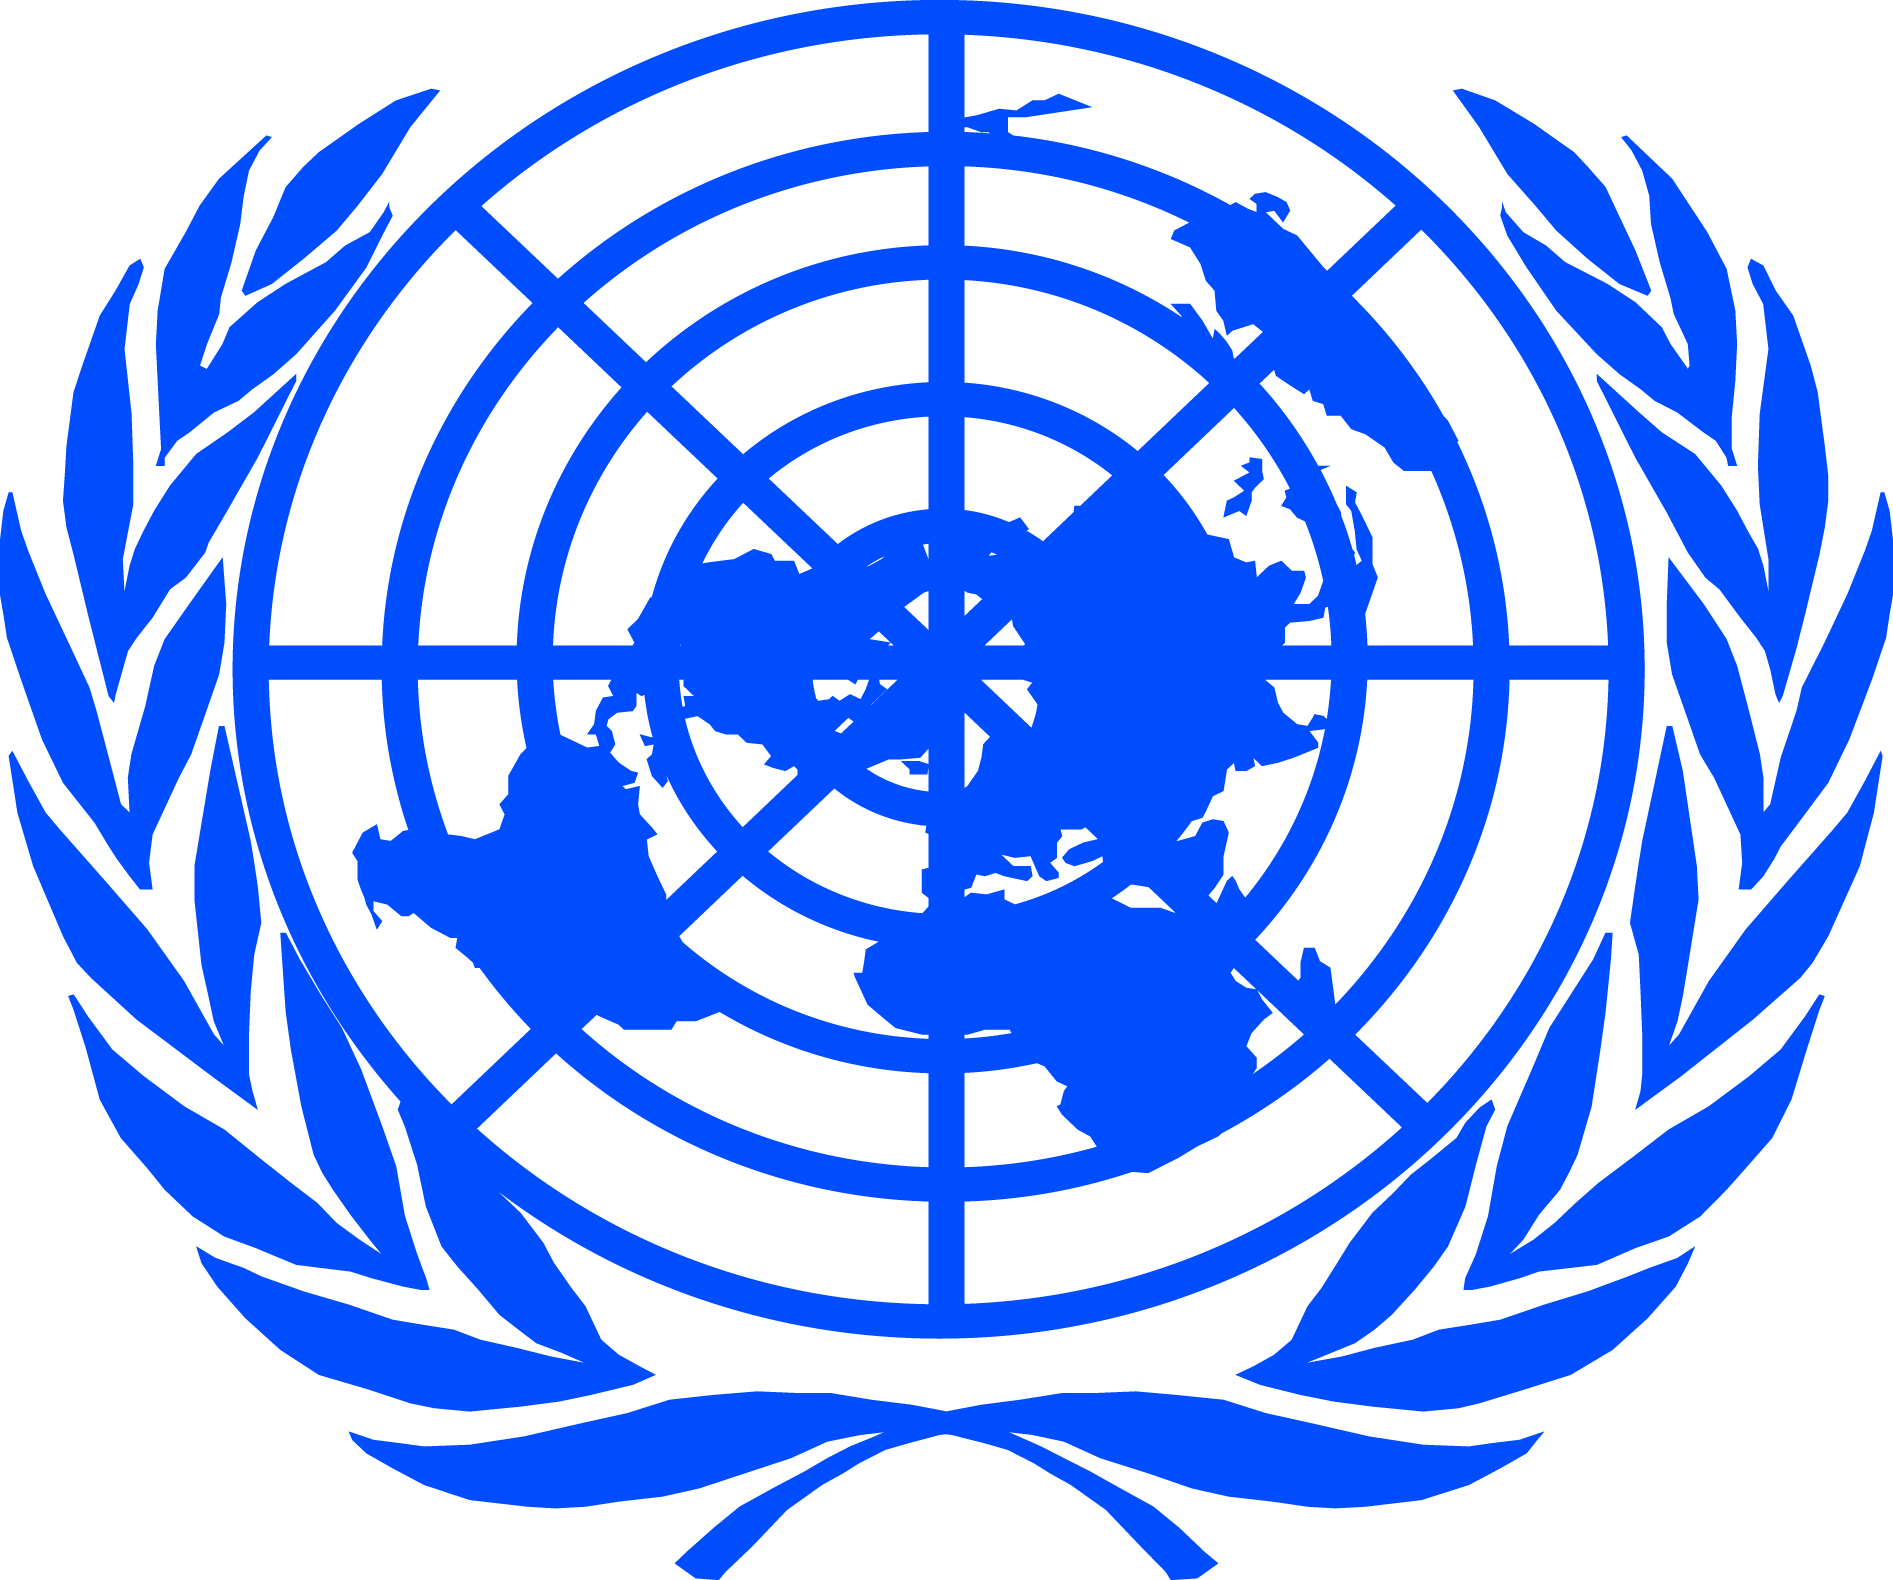 Оон материалы. Всемирная организация ООН. Международные организации ООН. Организация Объединенных наций (ООН). Совет безопасности ООН флаг.